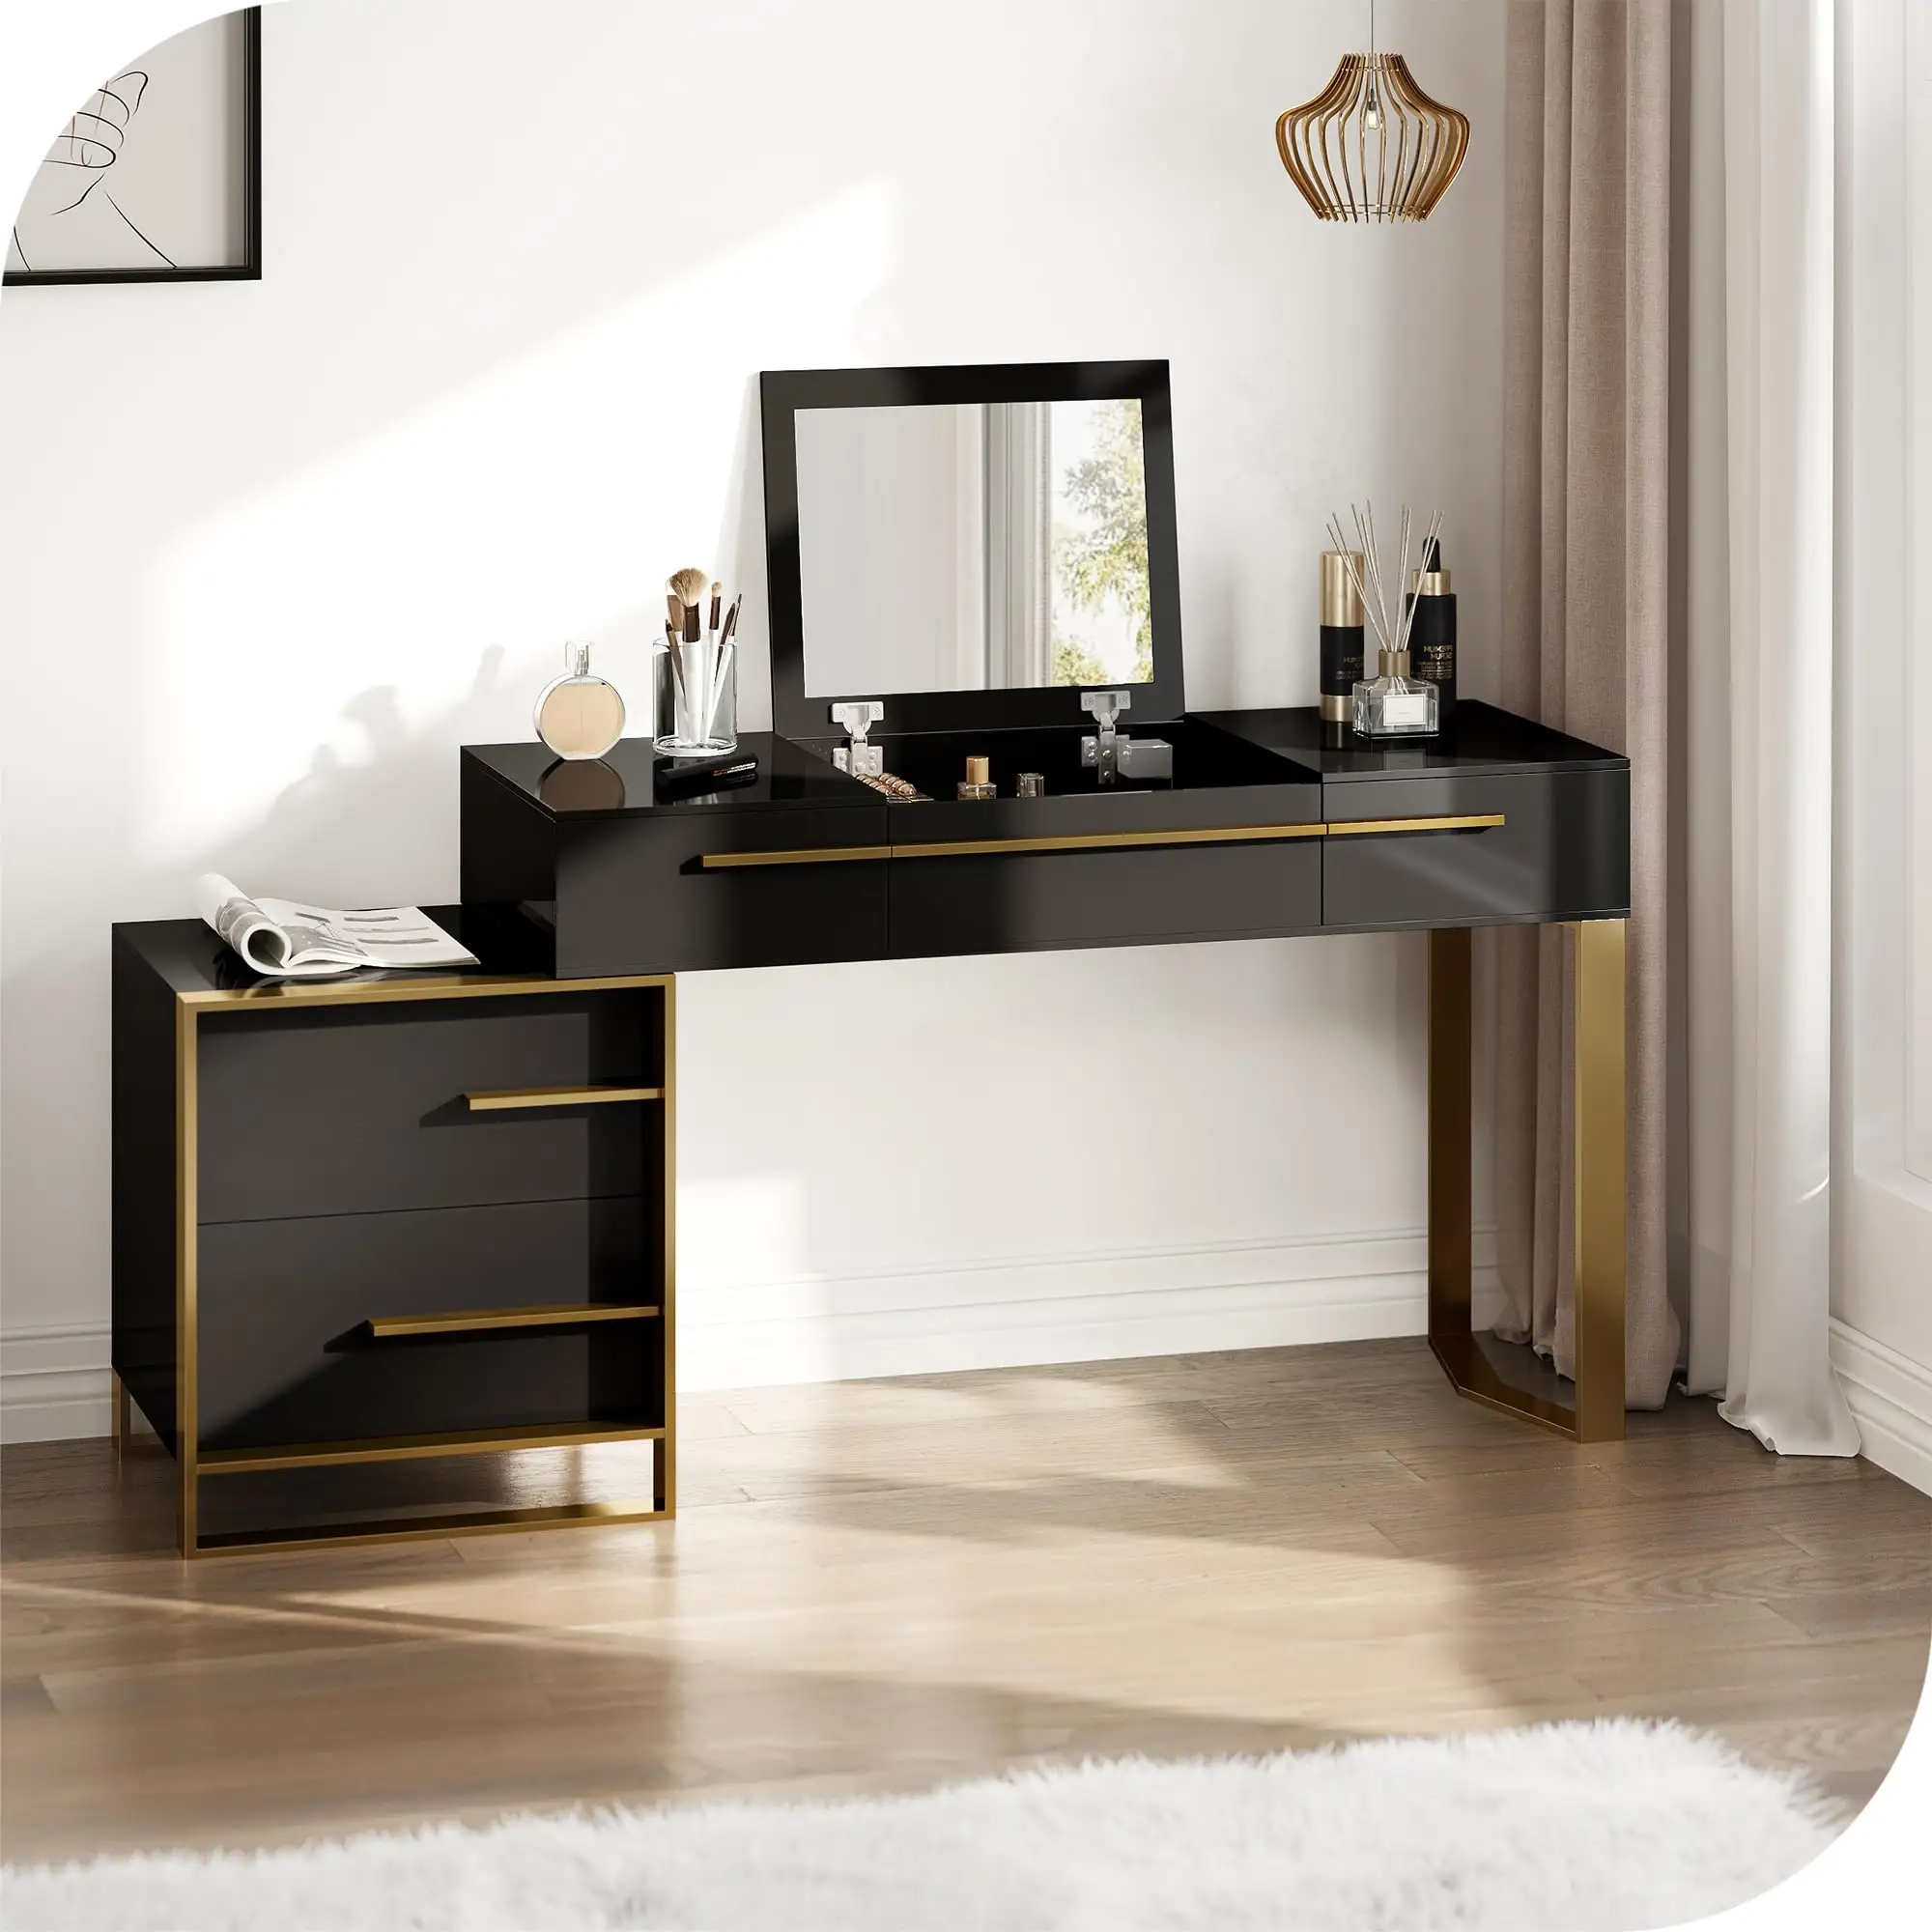 Vendita calda europea moderna di colore bianco angolo vanità led trucco tavolo in legno con specchio regolabile toletta camera da letto mobili